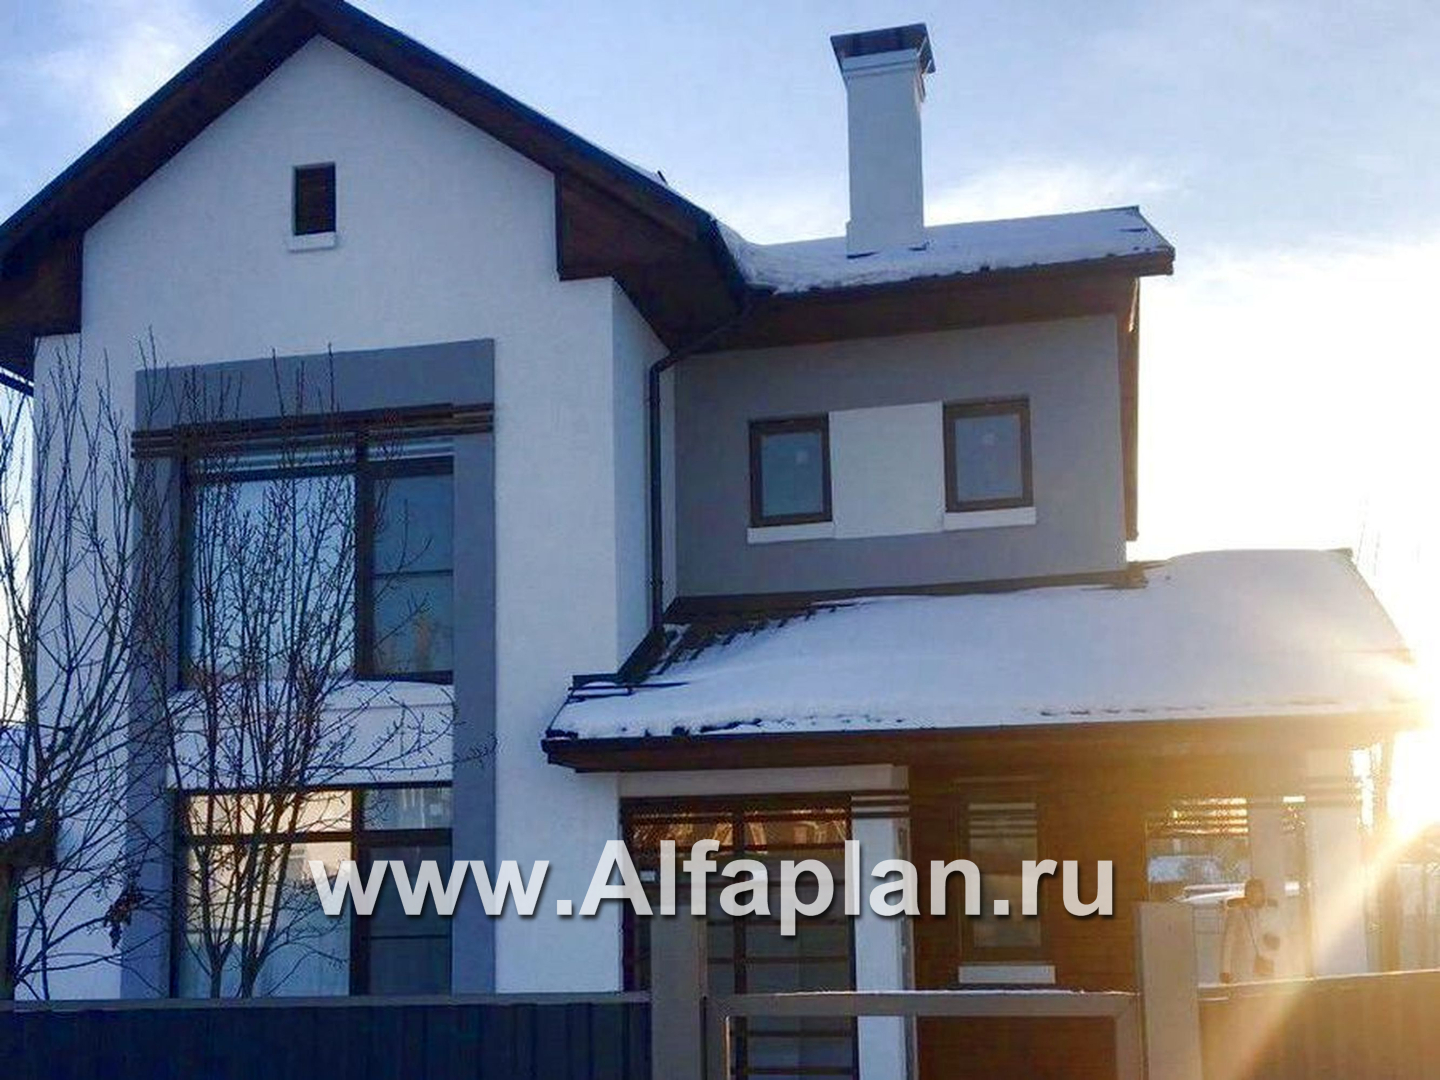 Проекты домов Альфаплан - «Каюткомпания» - экономичный дом для небольшой семьи и маленького участка - дополнительное изображение №3